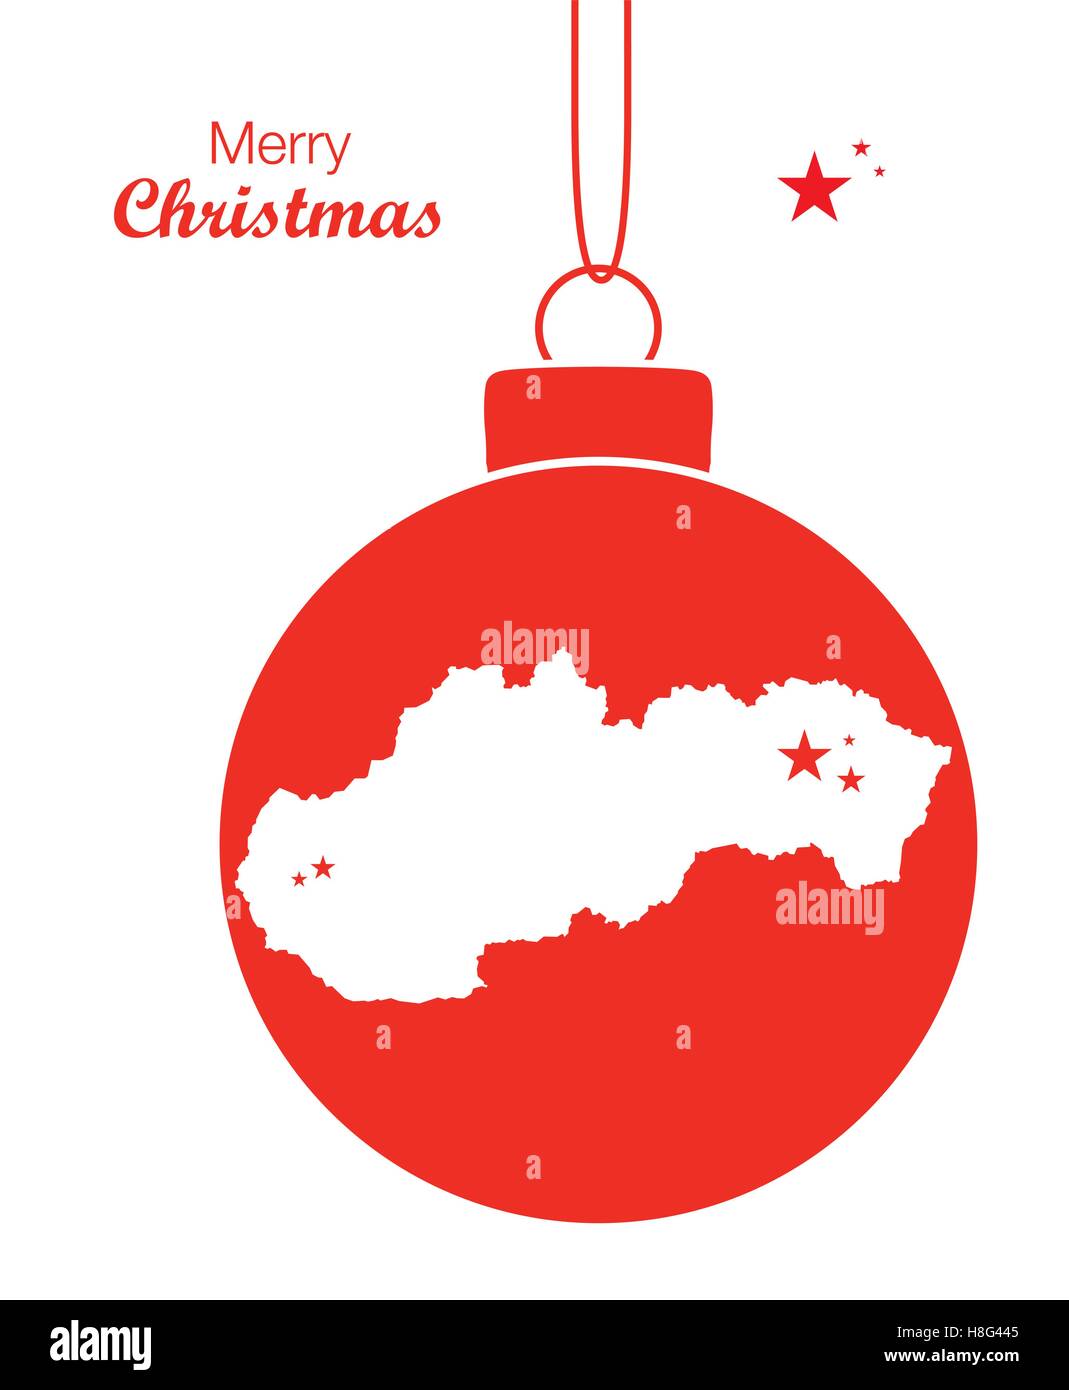 Buon Natale In Slovacco.Slovakia Map Immagini E Fotos Stock Alamy